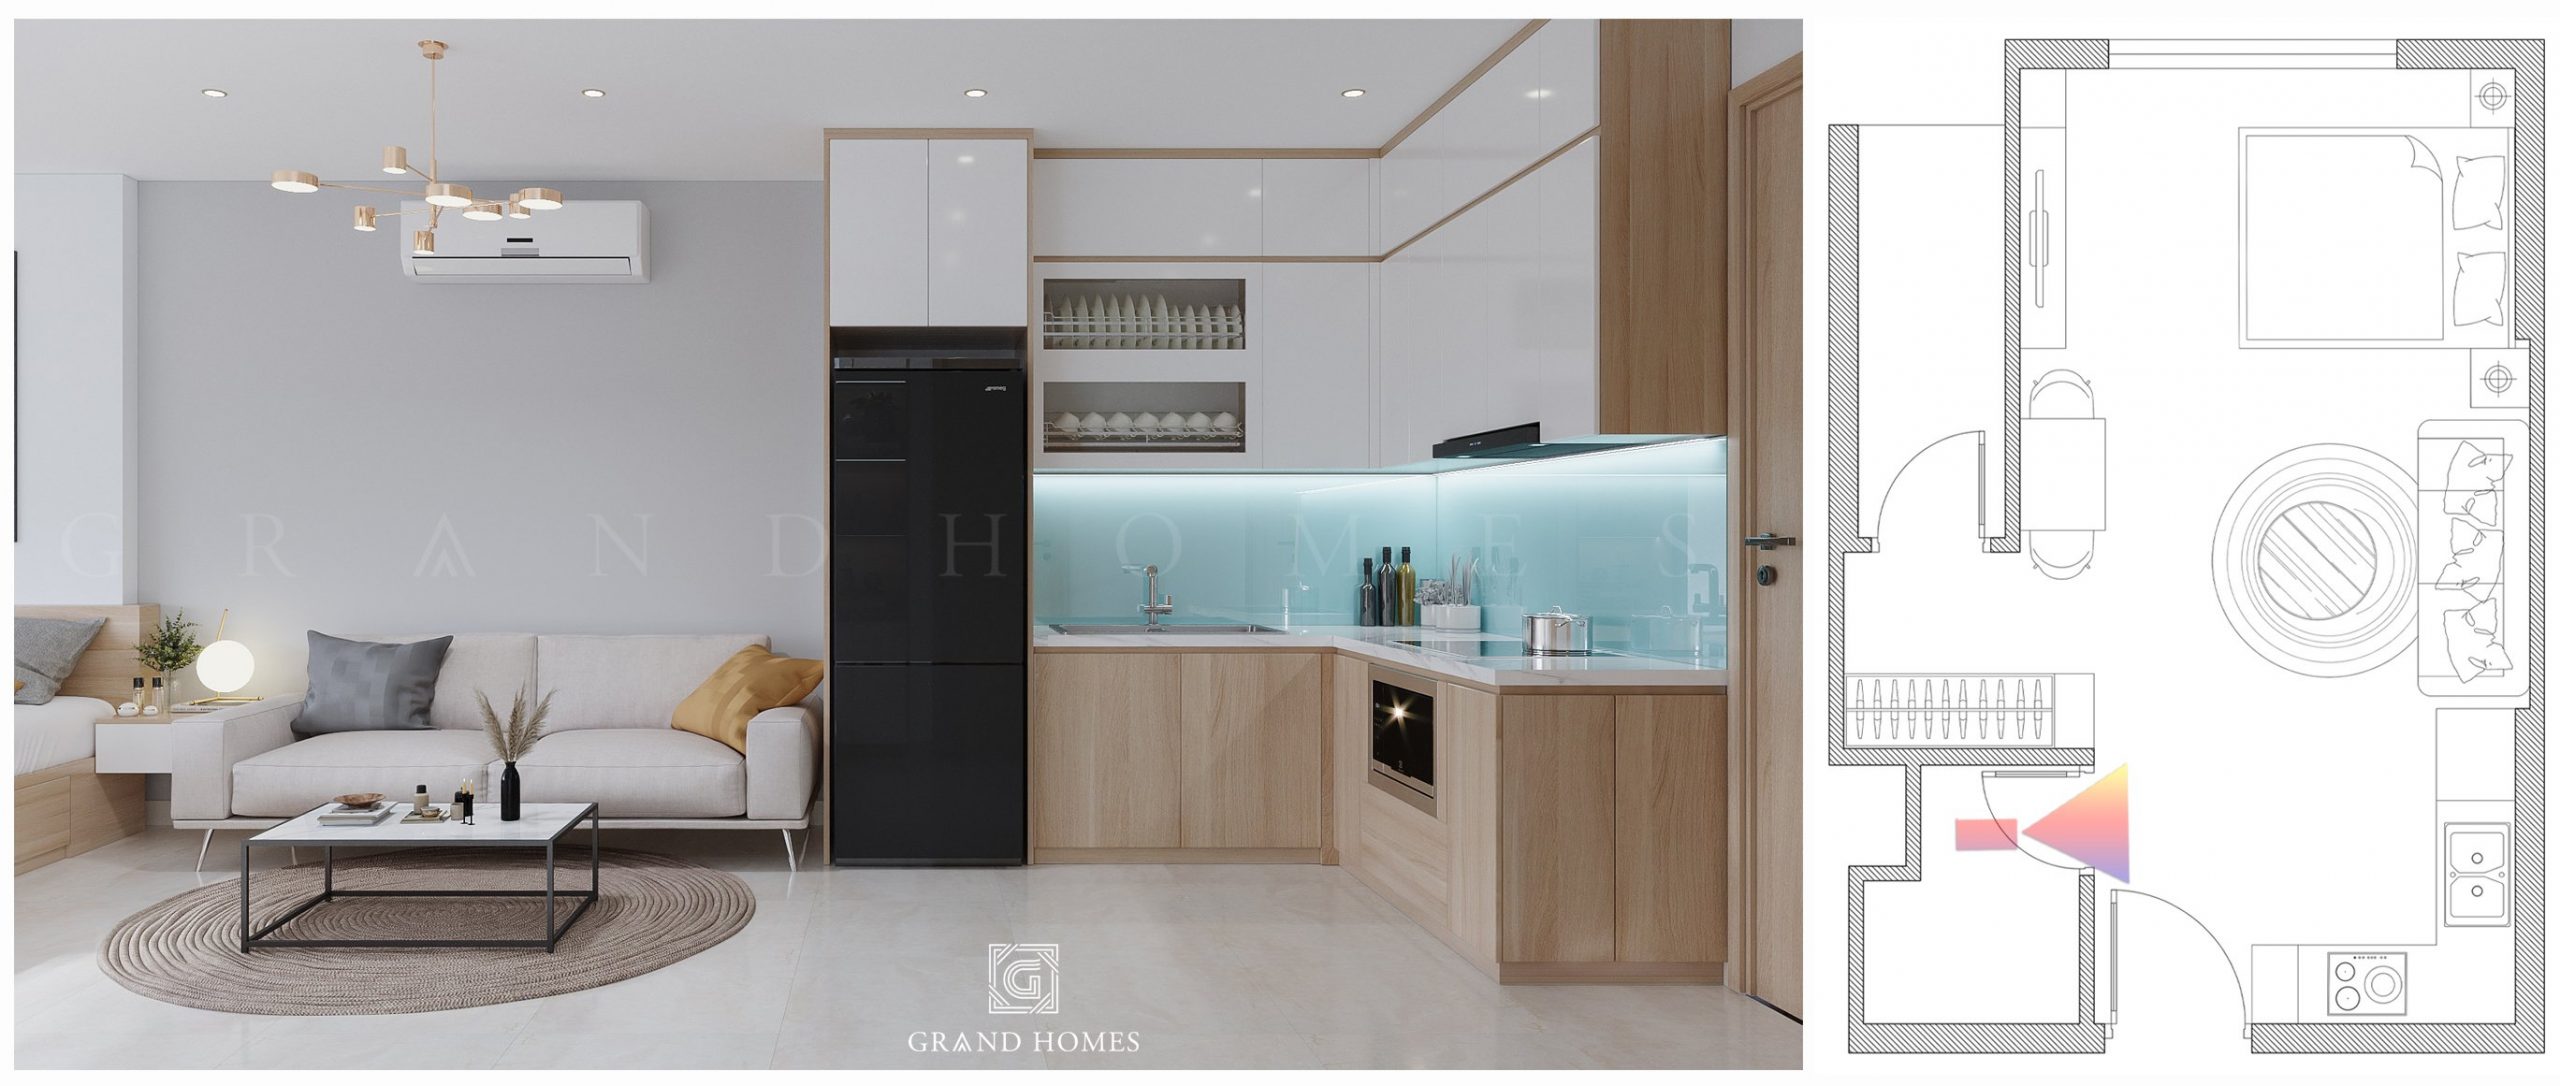 Grandhomes Việt Nam là công ty thiết kế nội thất chung cư uy tín, chuyên nghiệp